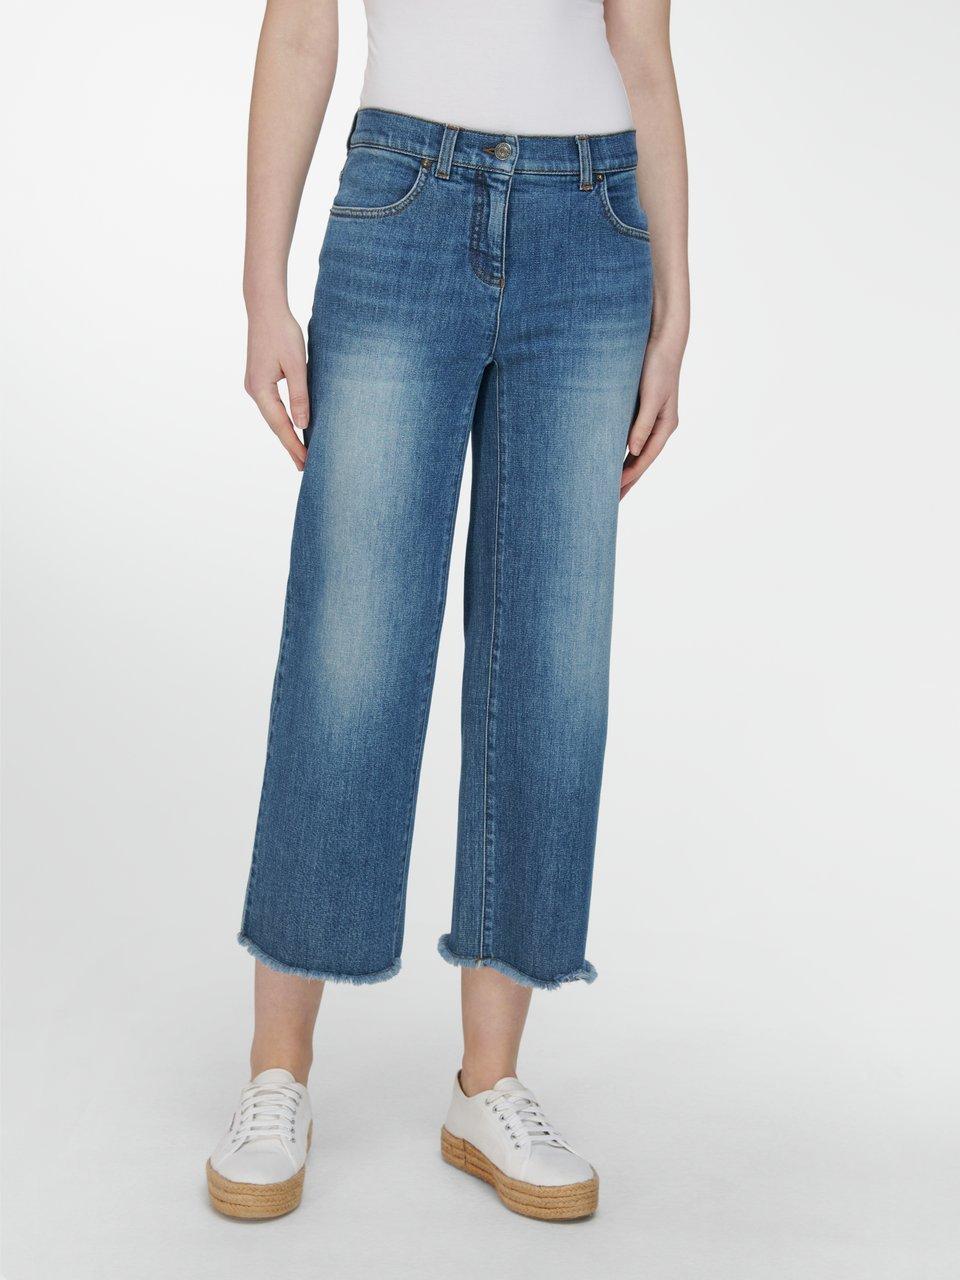 PETER HAHN PURE EDITION - La jupe-culotte en jean coupe 4 poches